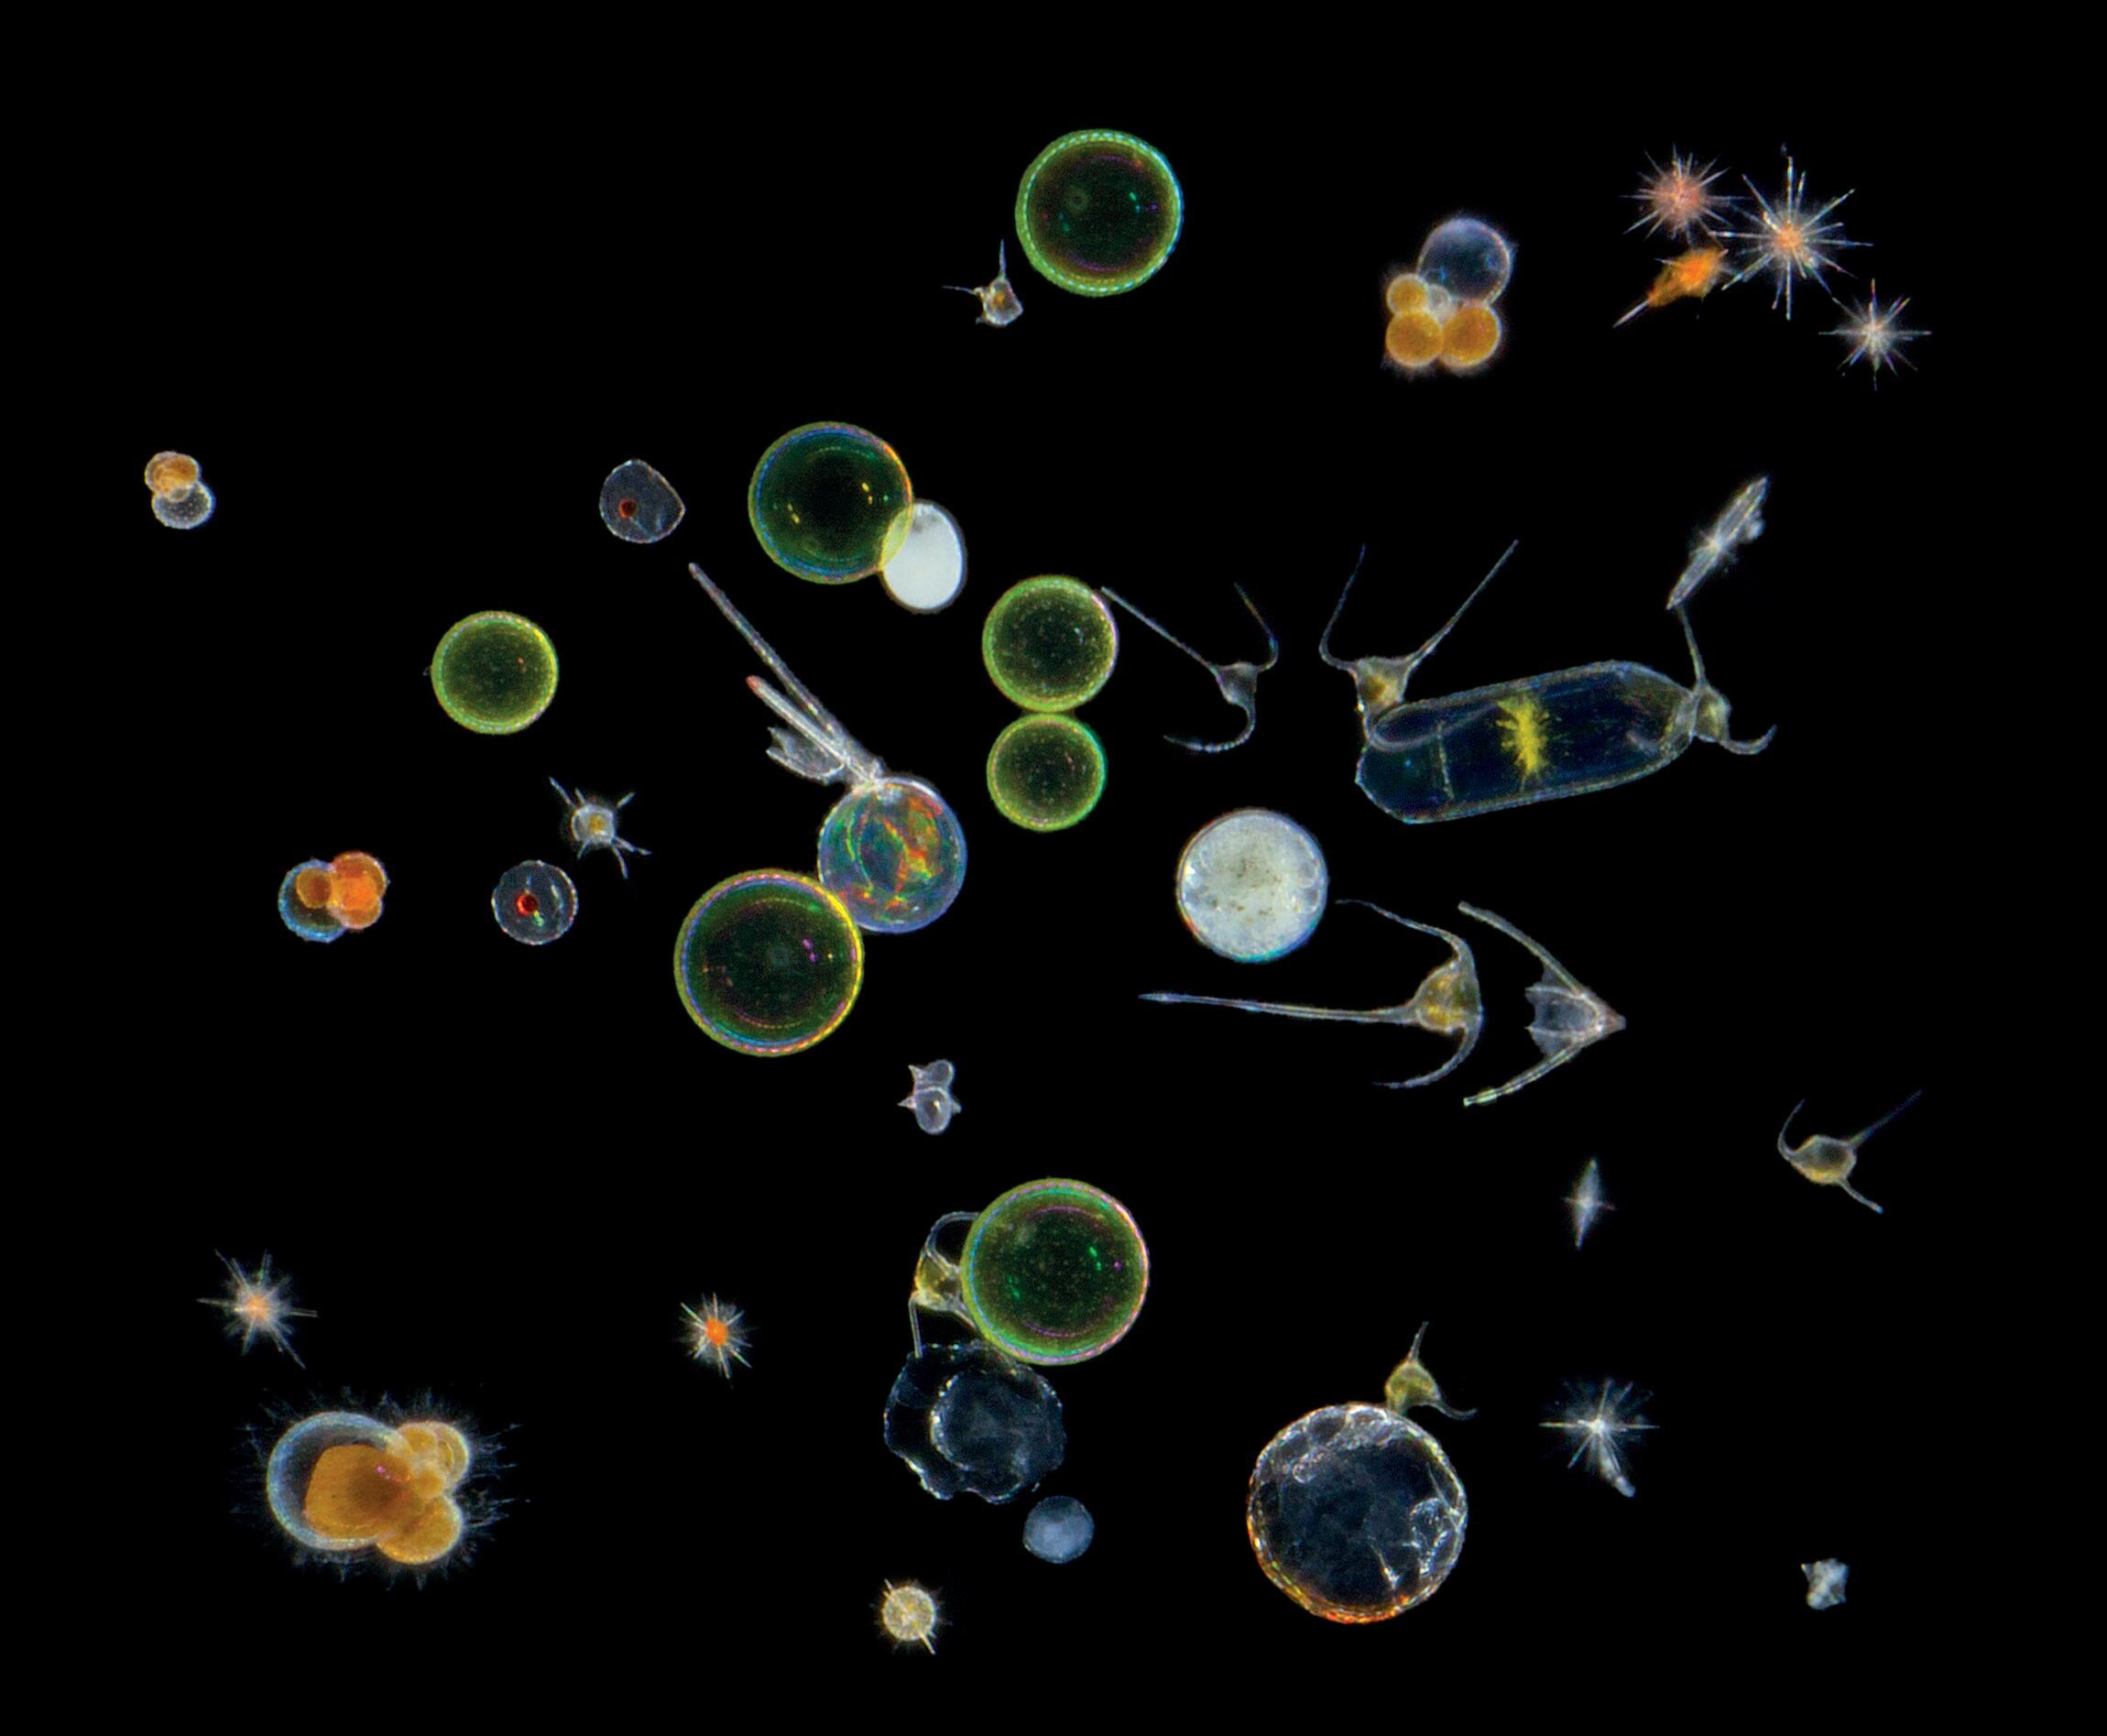 Определение фитопланктона